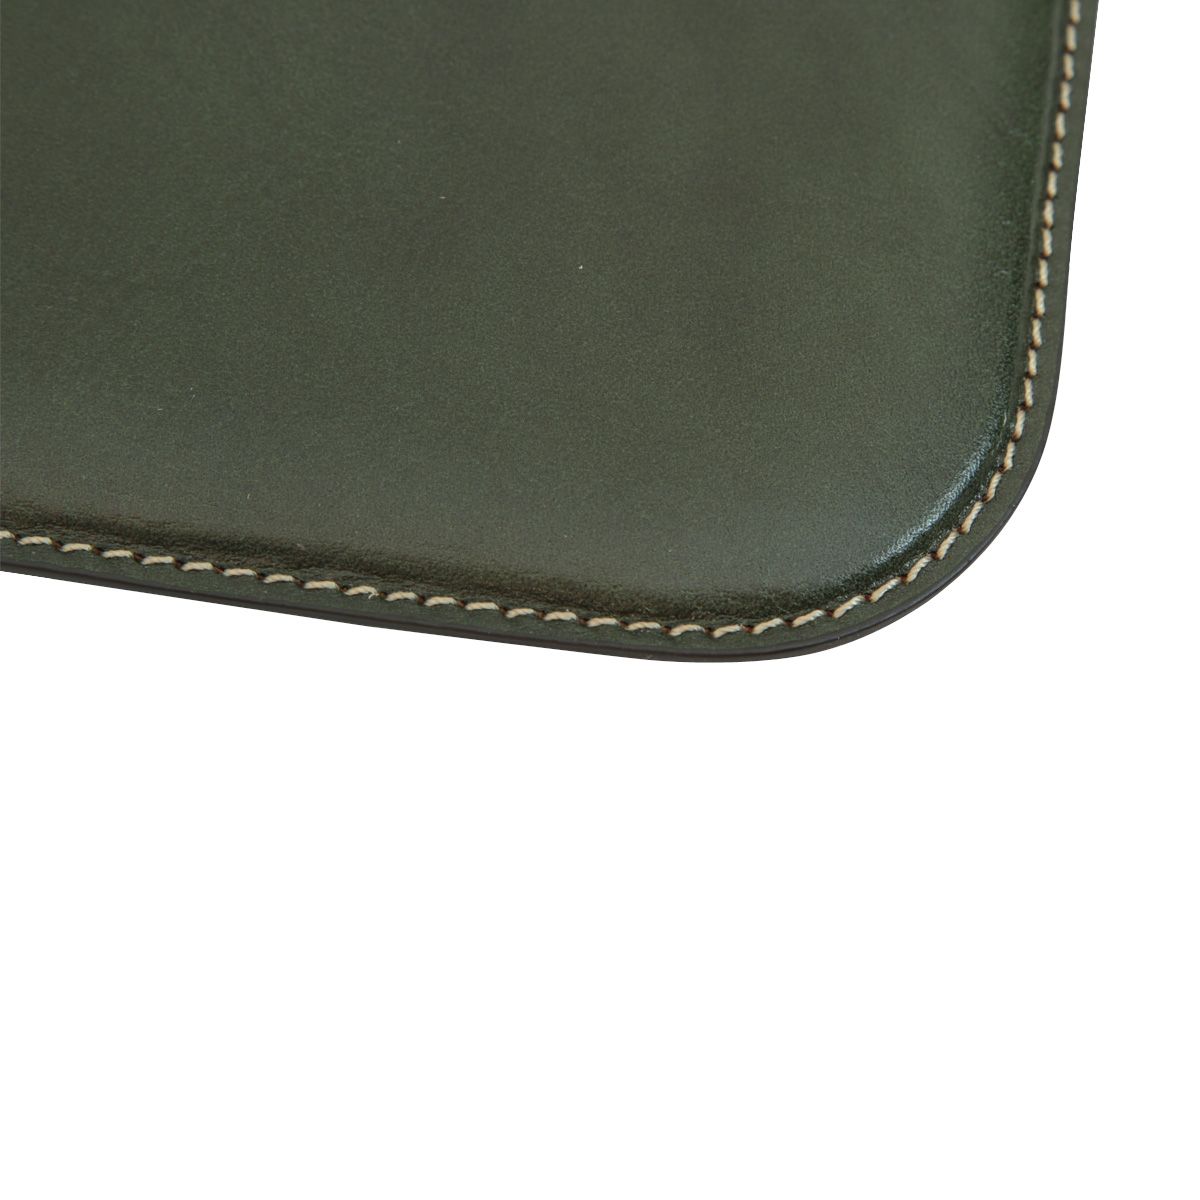 Leather Desk pad - green | 760089VE UK | Old Angler Firenze